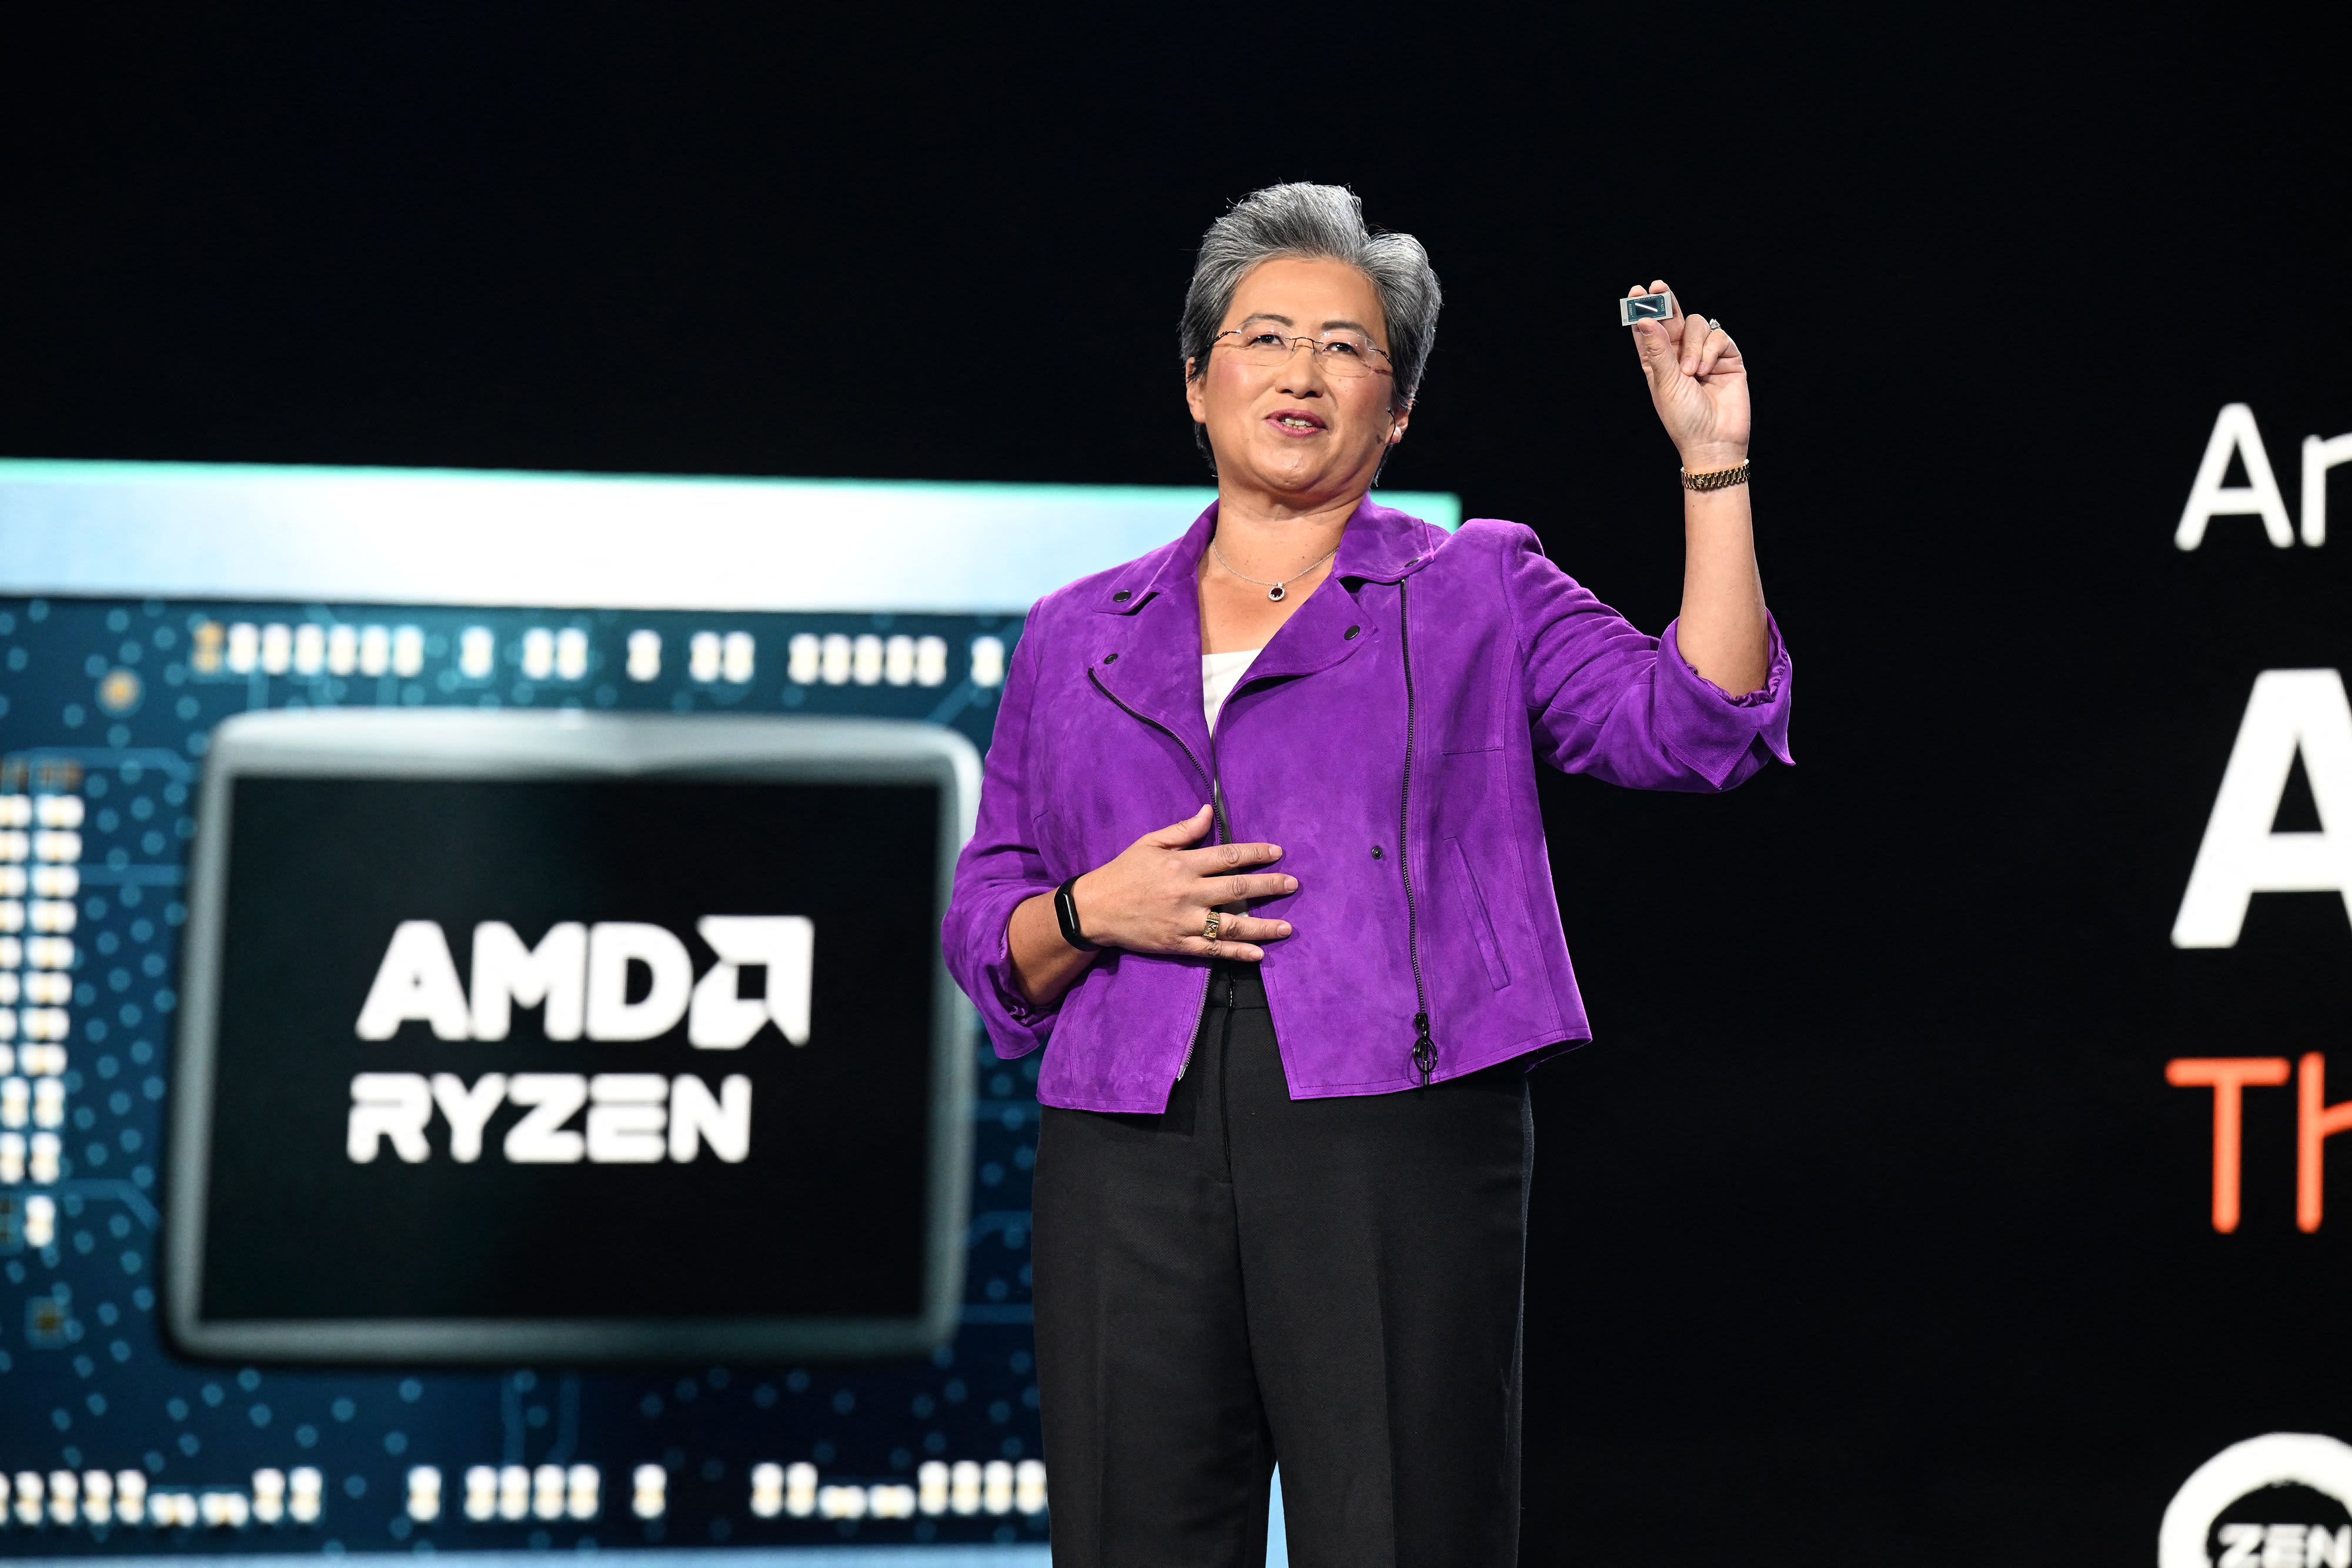 AMD espera vender chips de inteligencia artificial por valor de 2.000 millones de dólares el próximo año